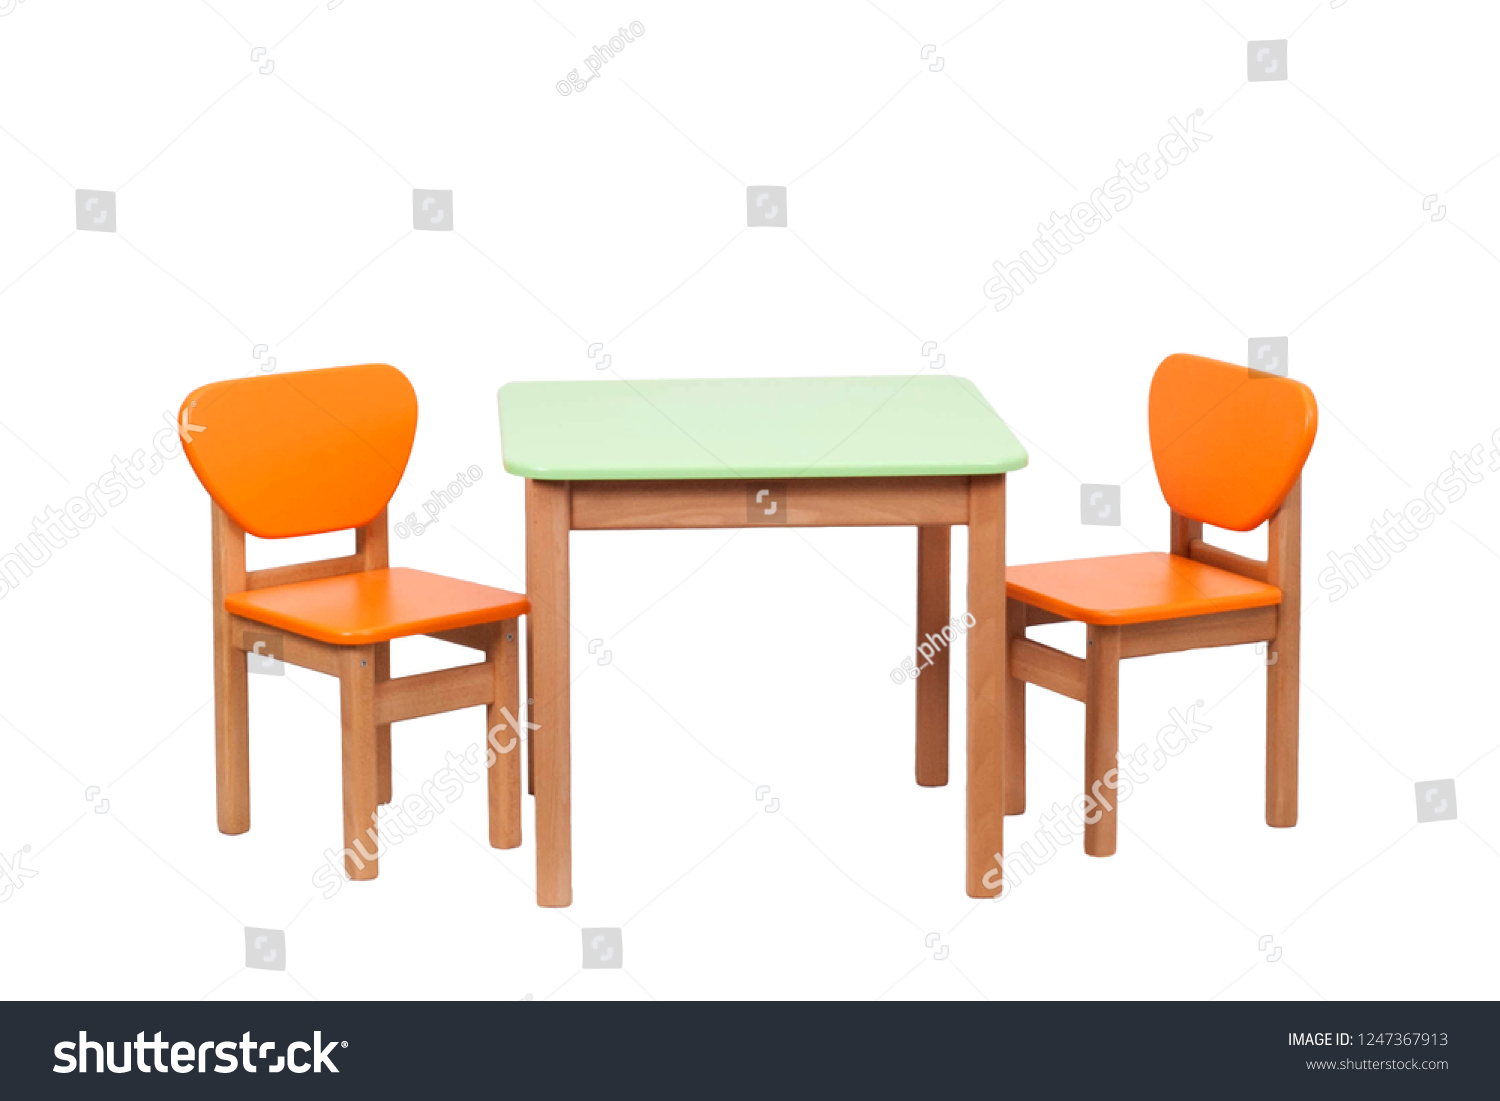 table for children's room